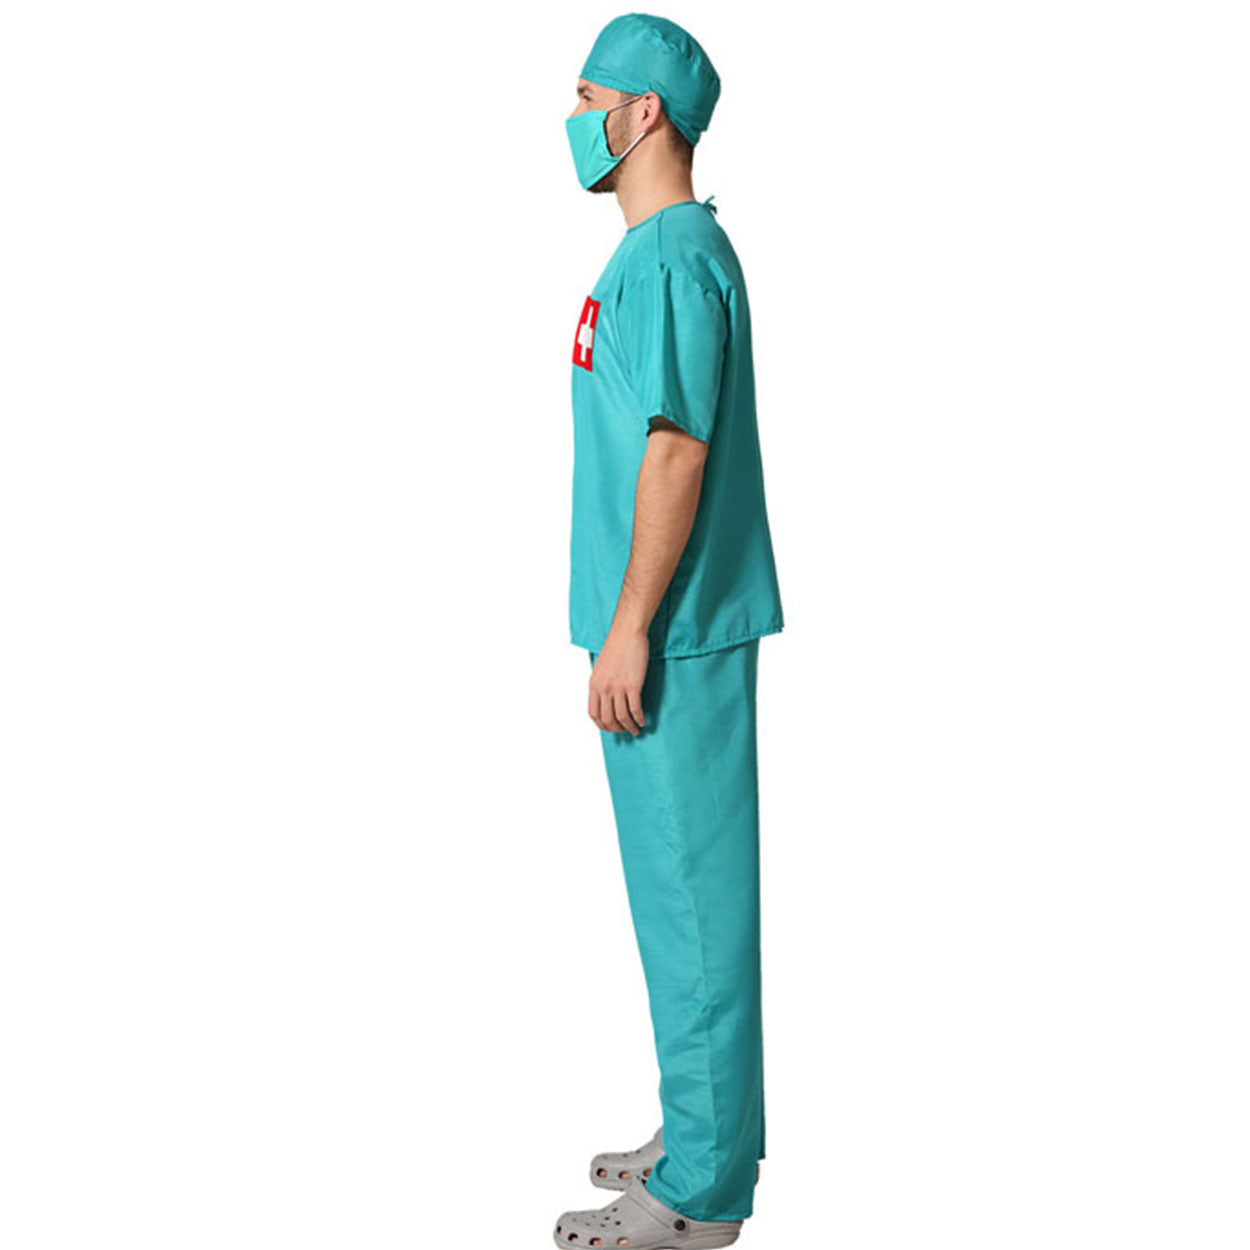 Costume Dottore Chirurgo Tg 52/54